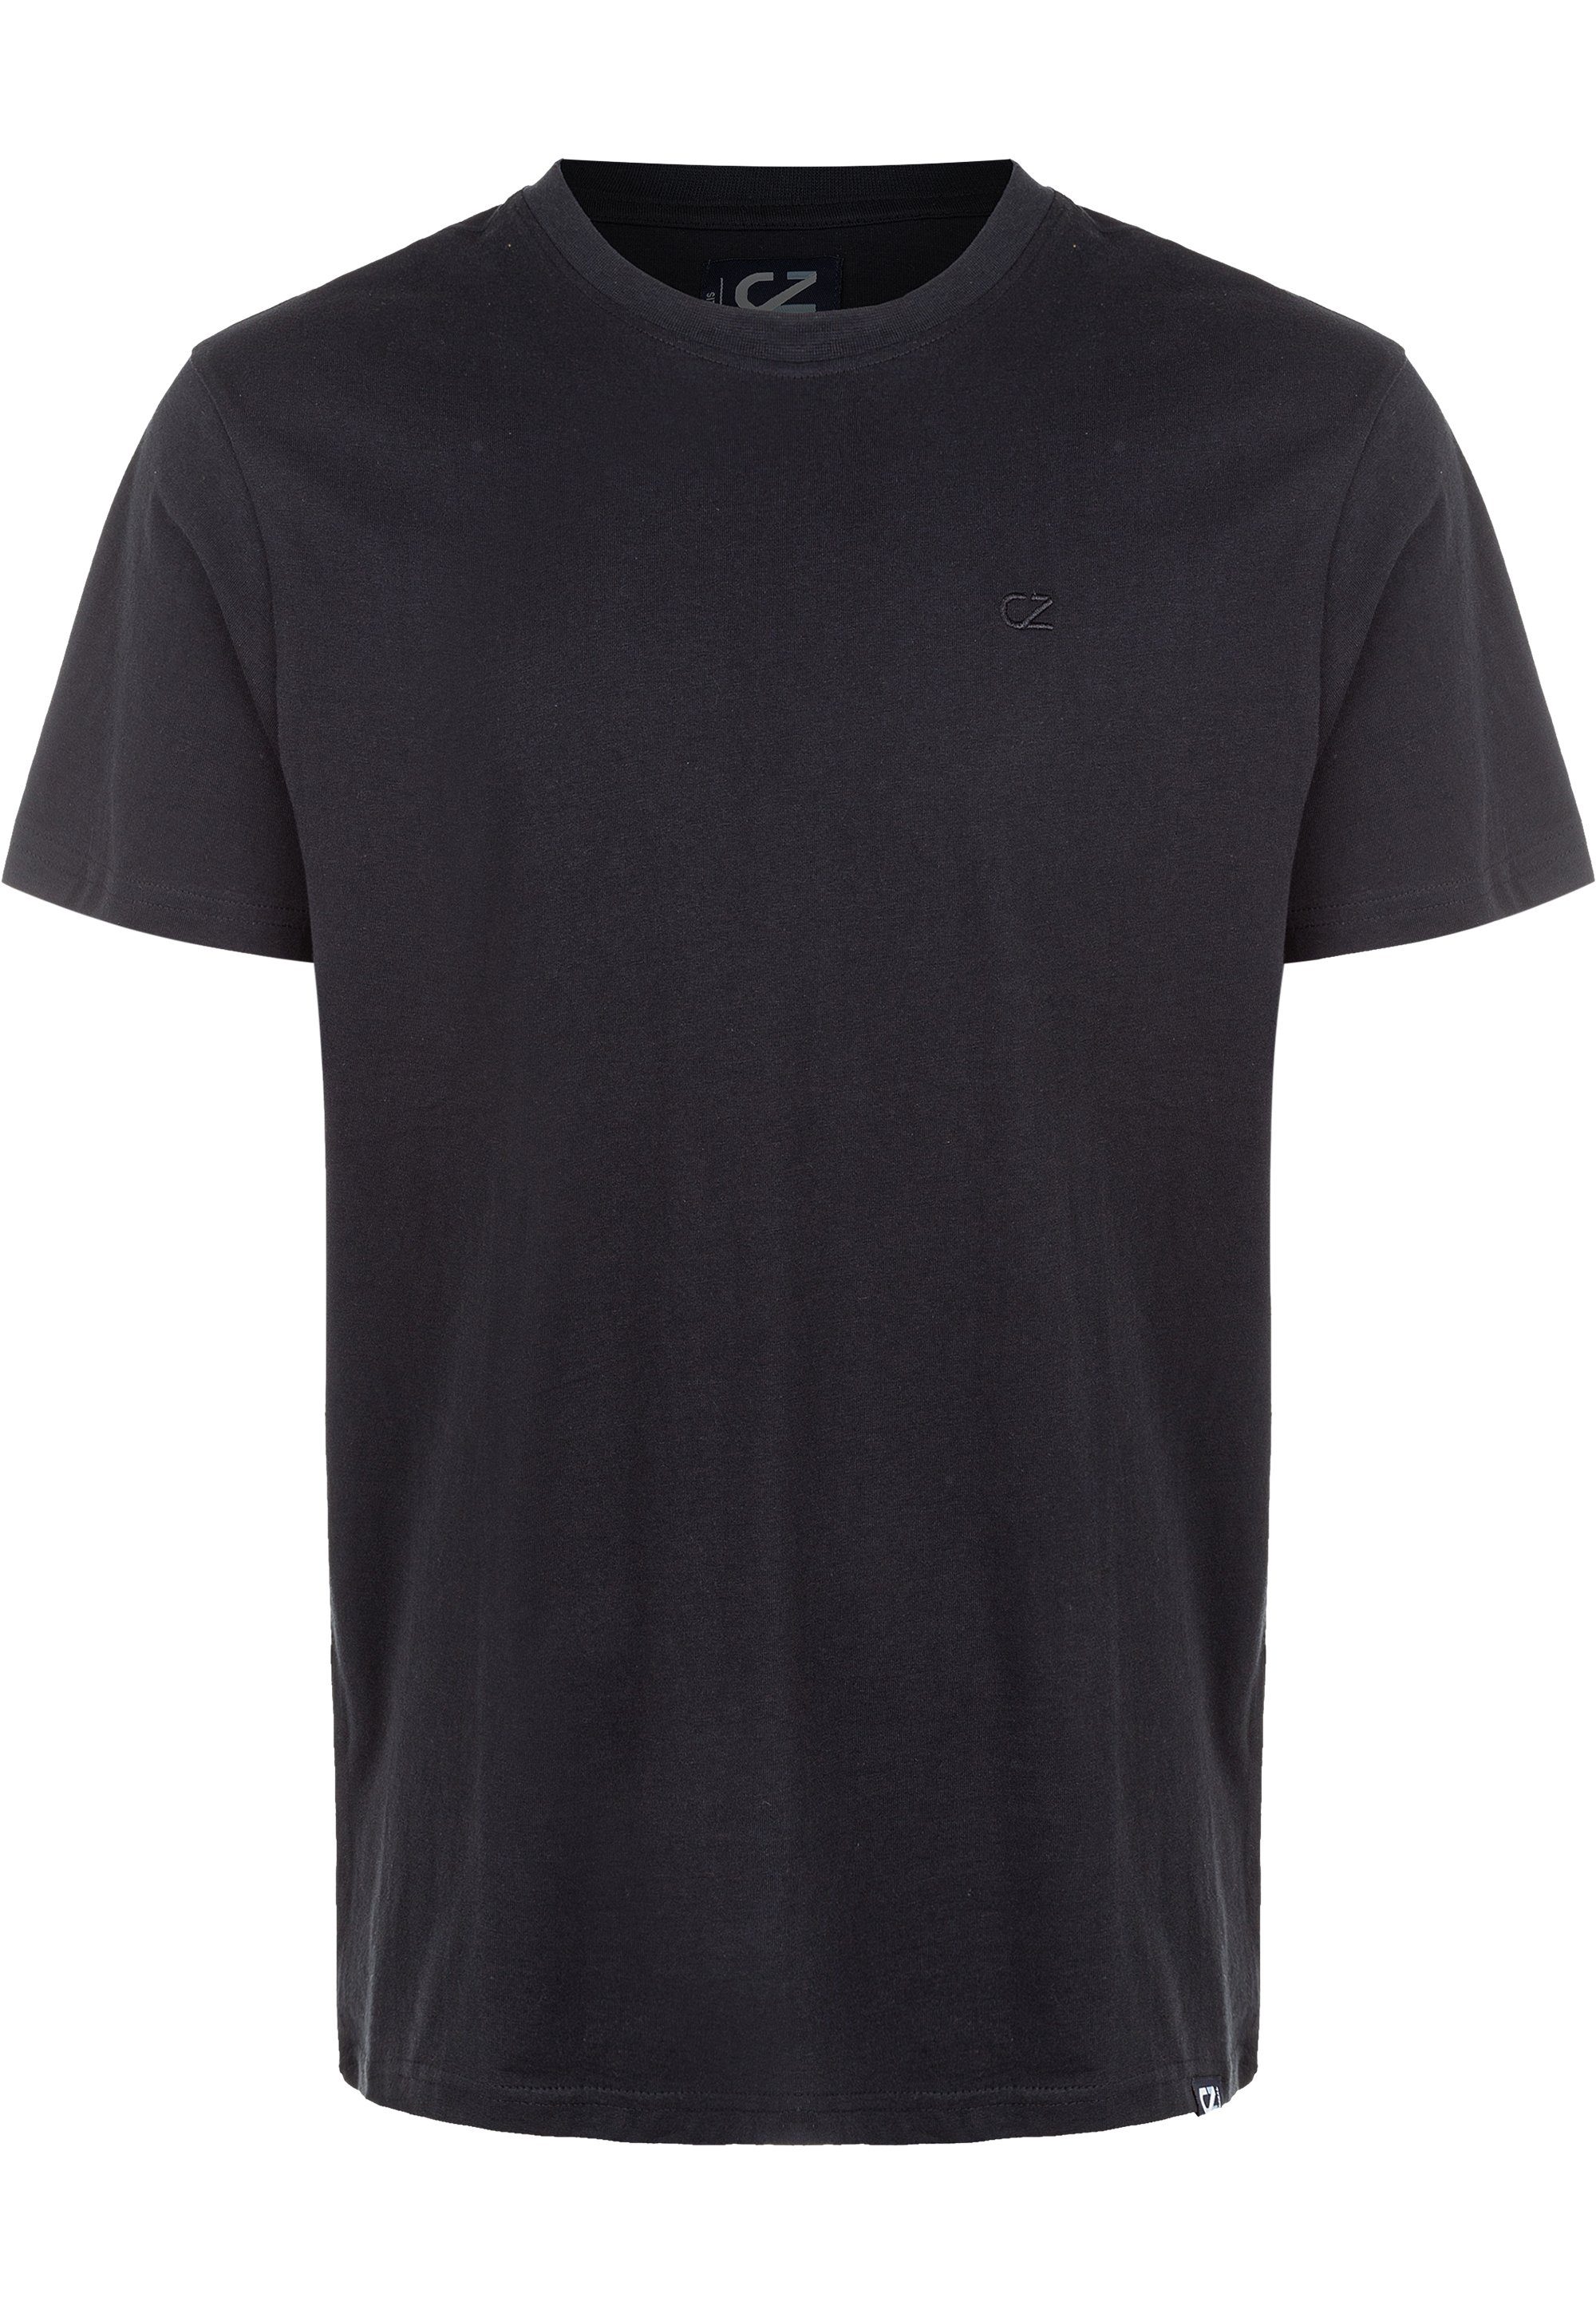 CRUZ T-Shirt reiner Highmore schwarz Baumwolle aus